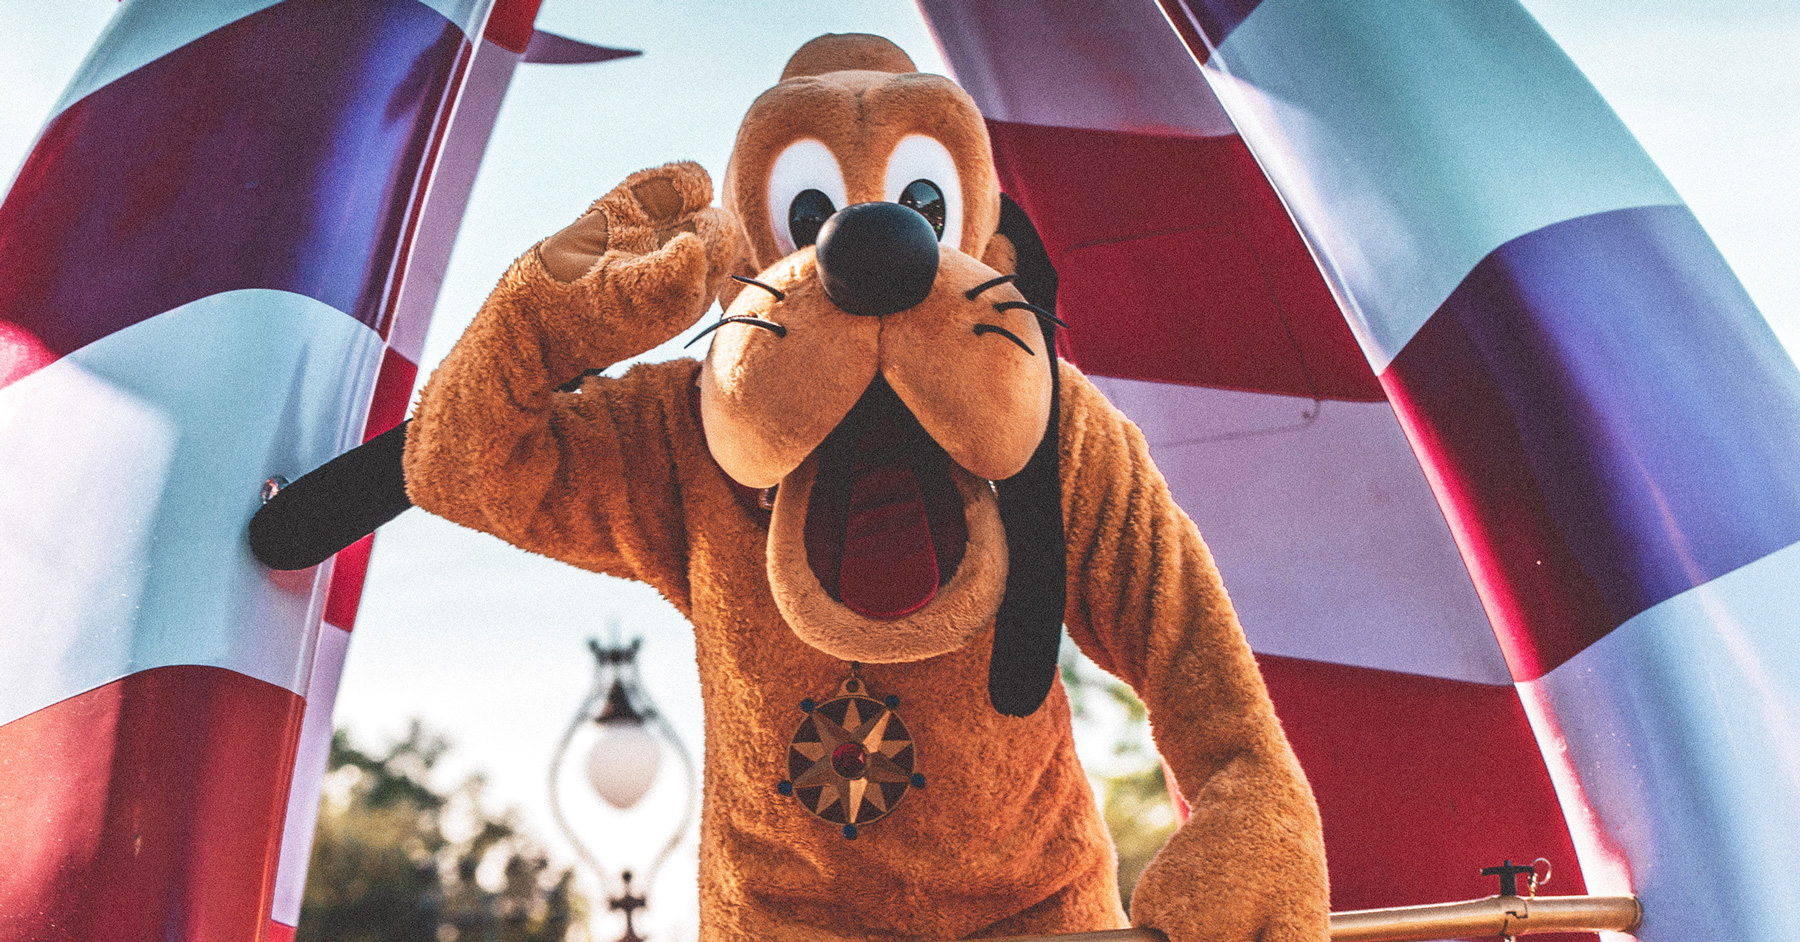 Disney's Pluto waving from parade float